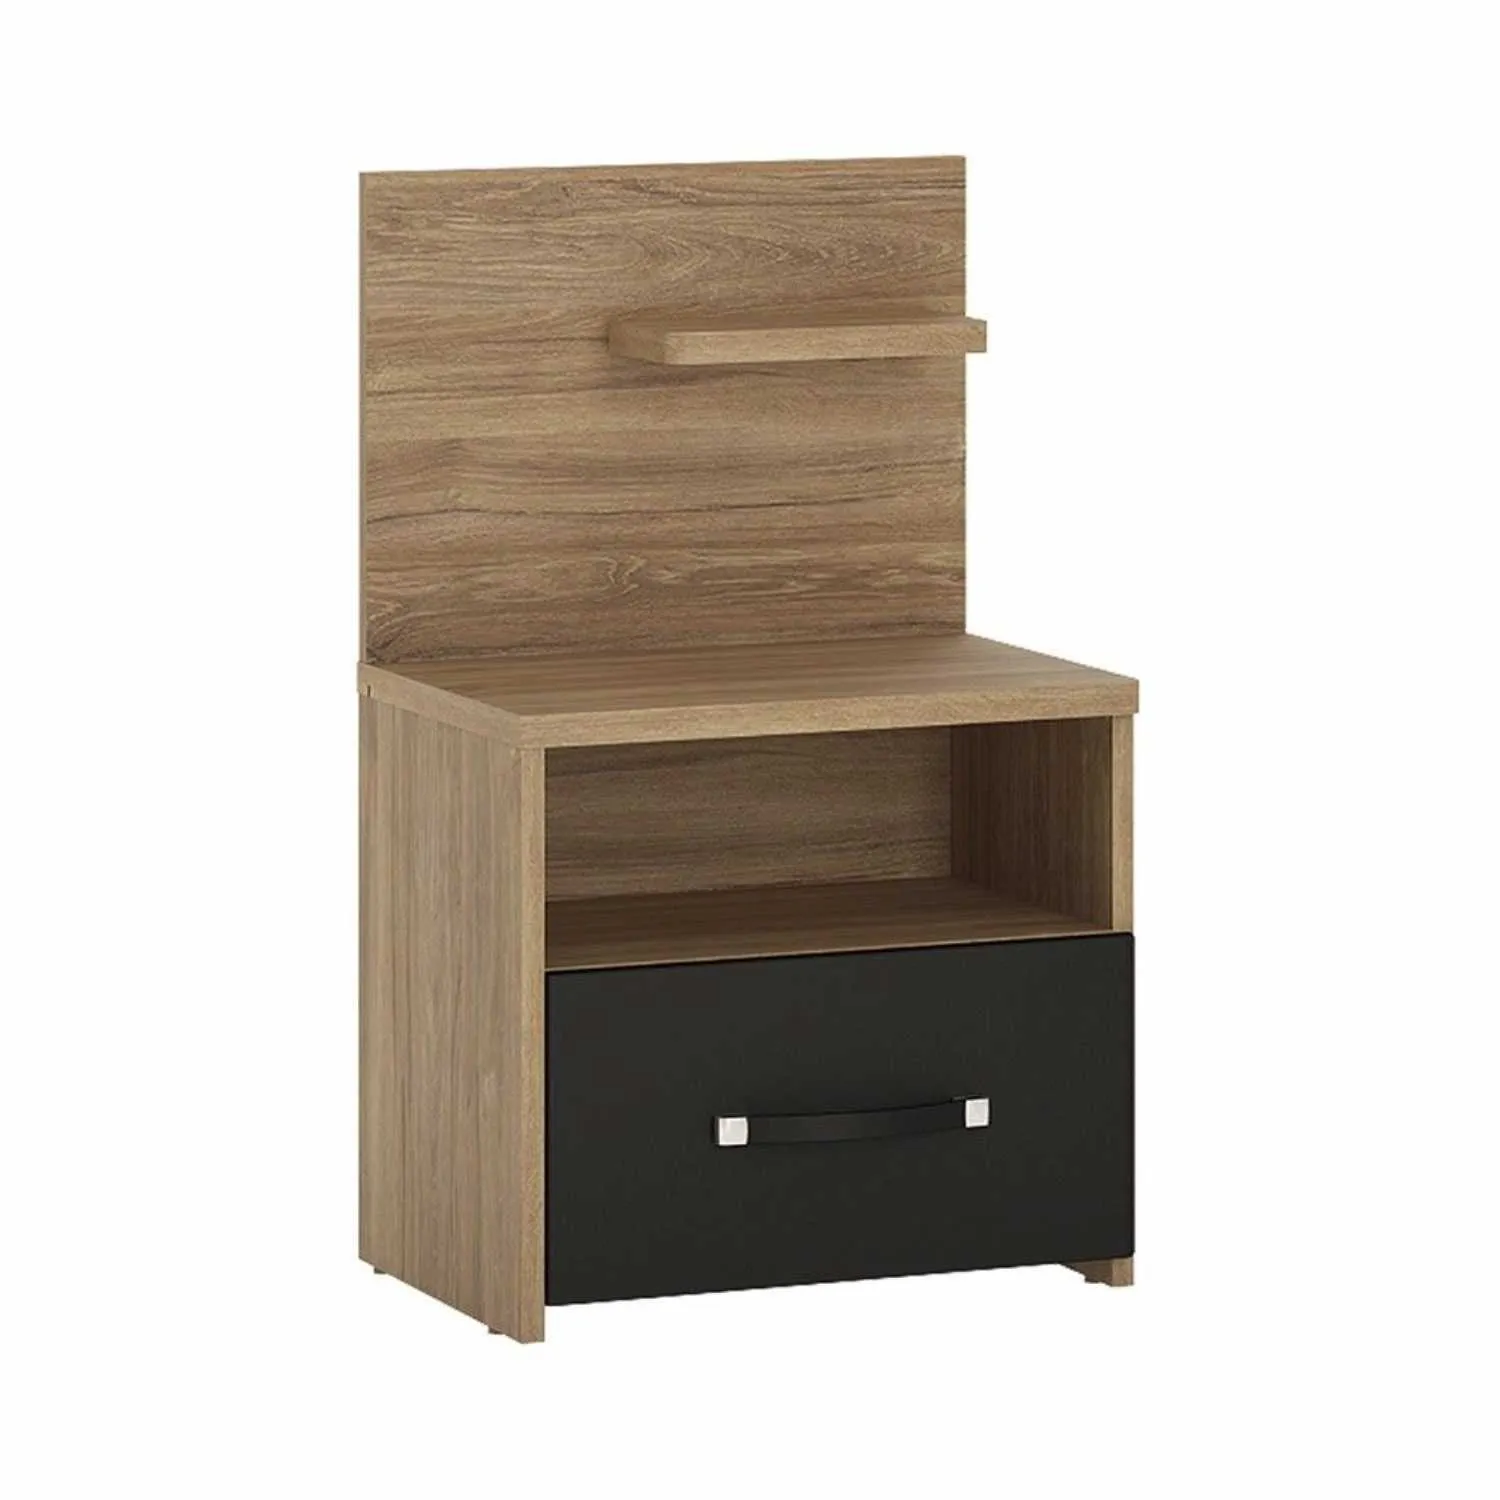 Industrial Oak and Matt Black 1 Drawer Bedside Table Cabinet Open Shelf RH